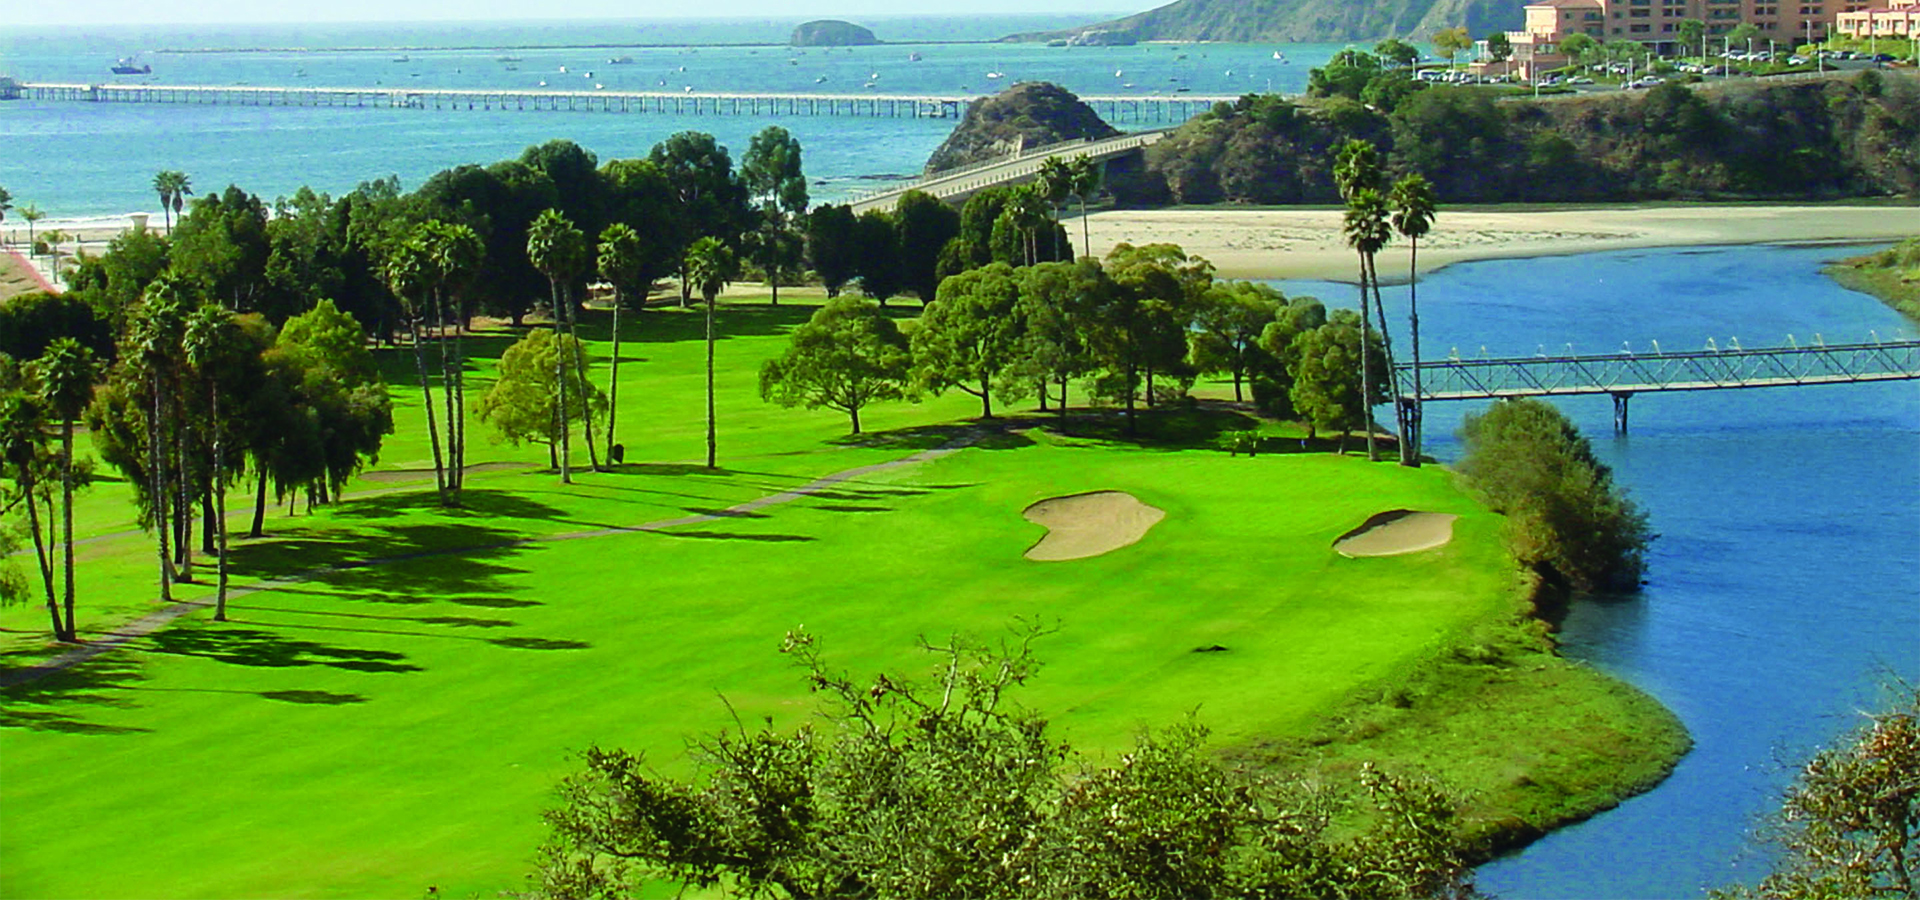 Avila Beach Golf Resort: Home